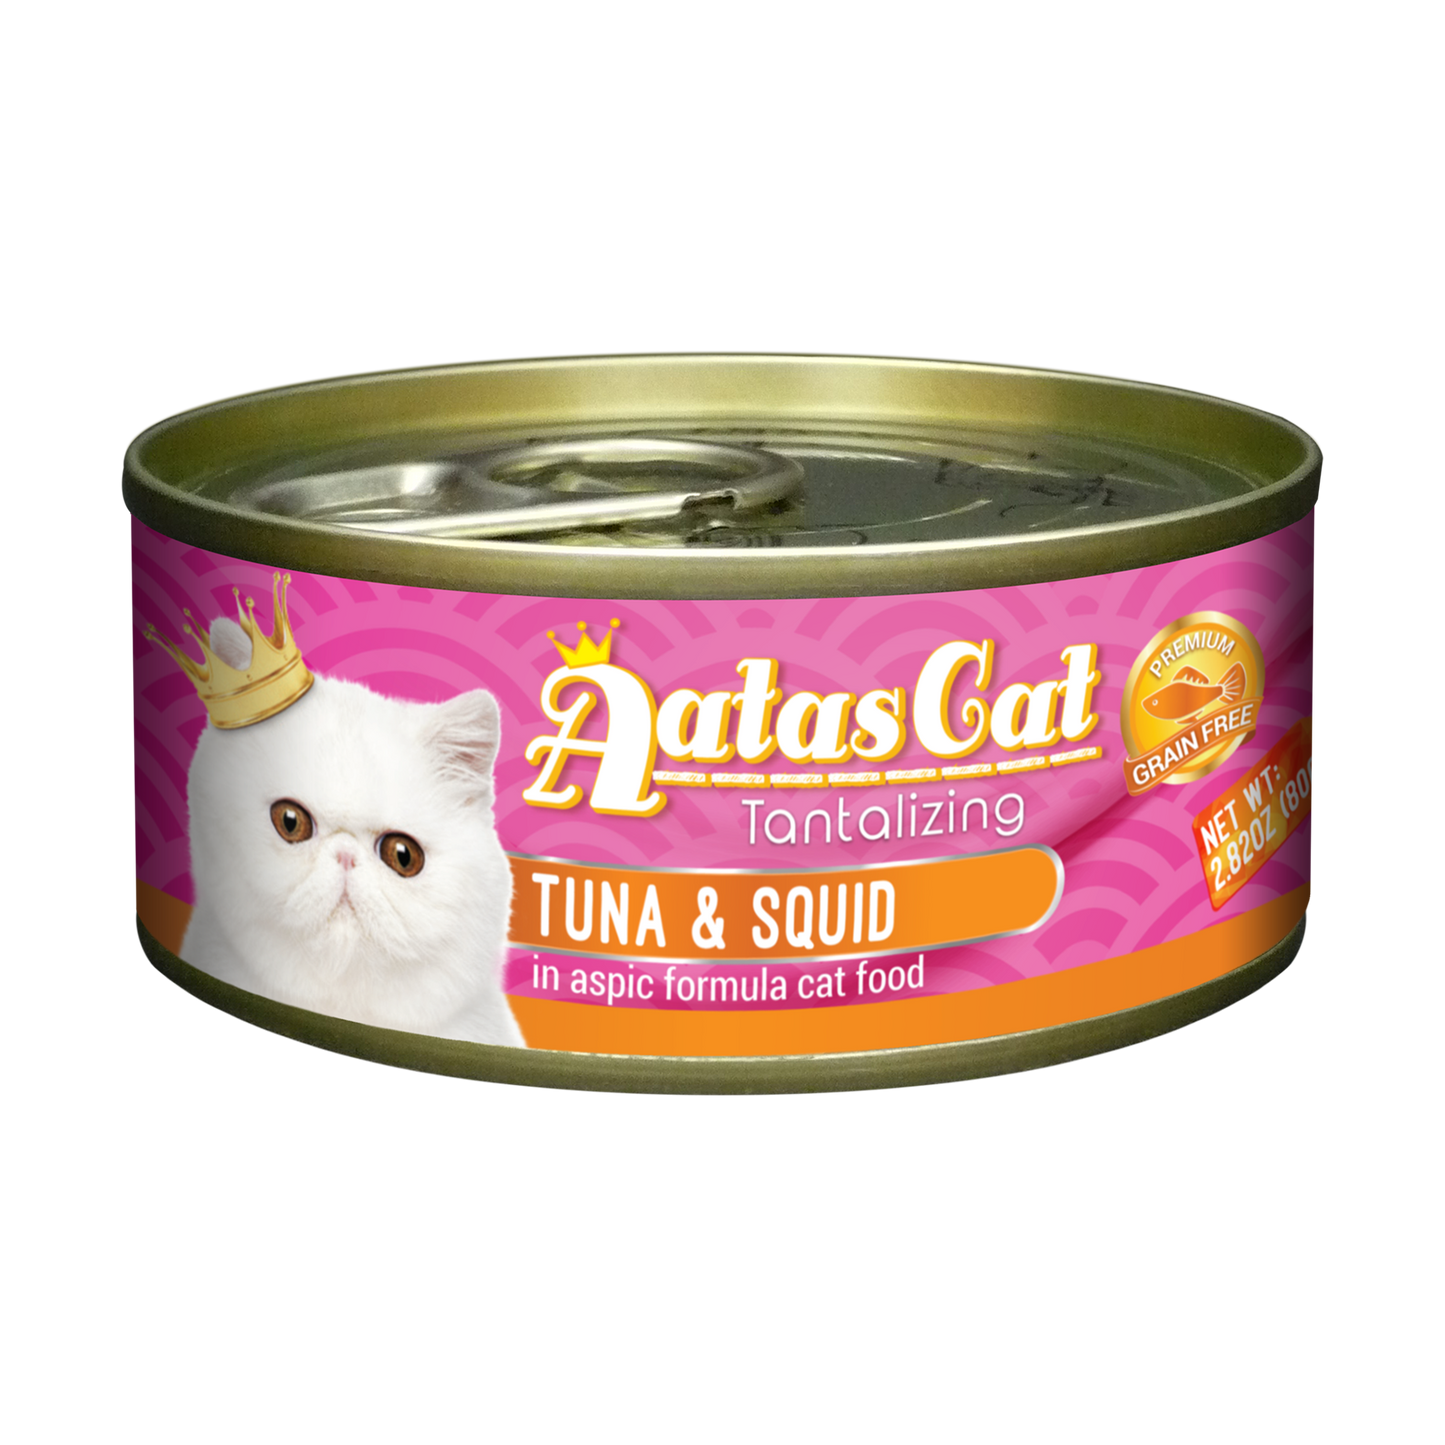 Aatas Cat Tantalizing Tuna & Squid Cat Canned Food 80g